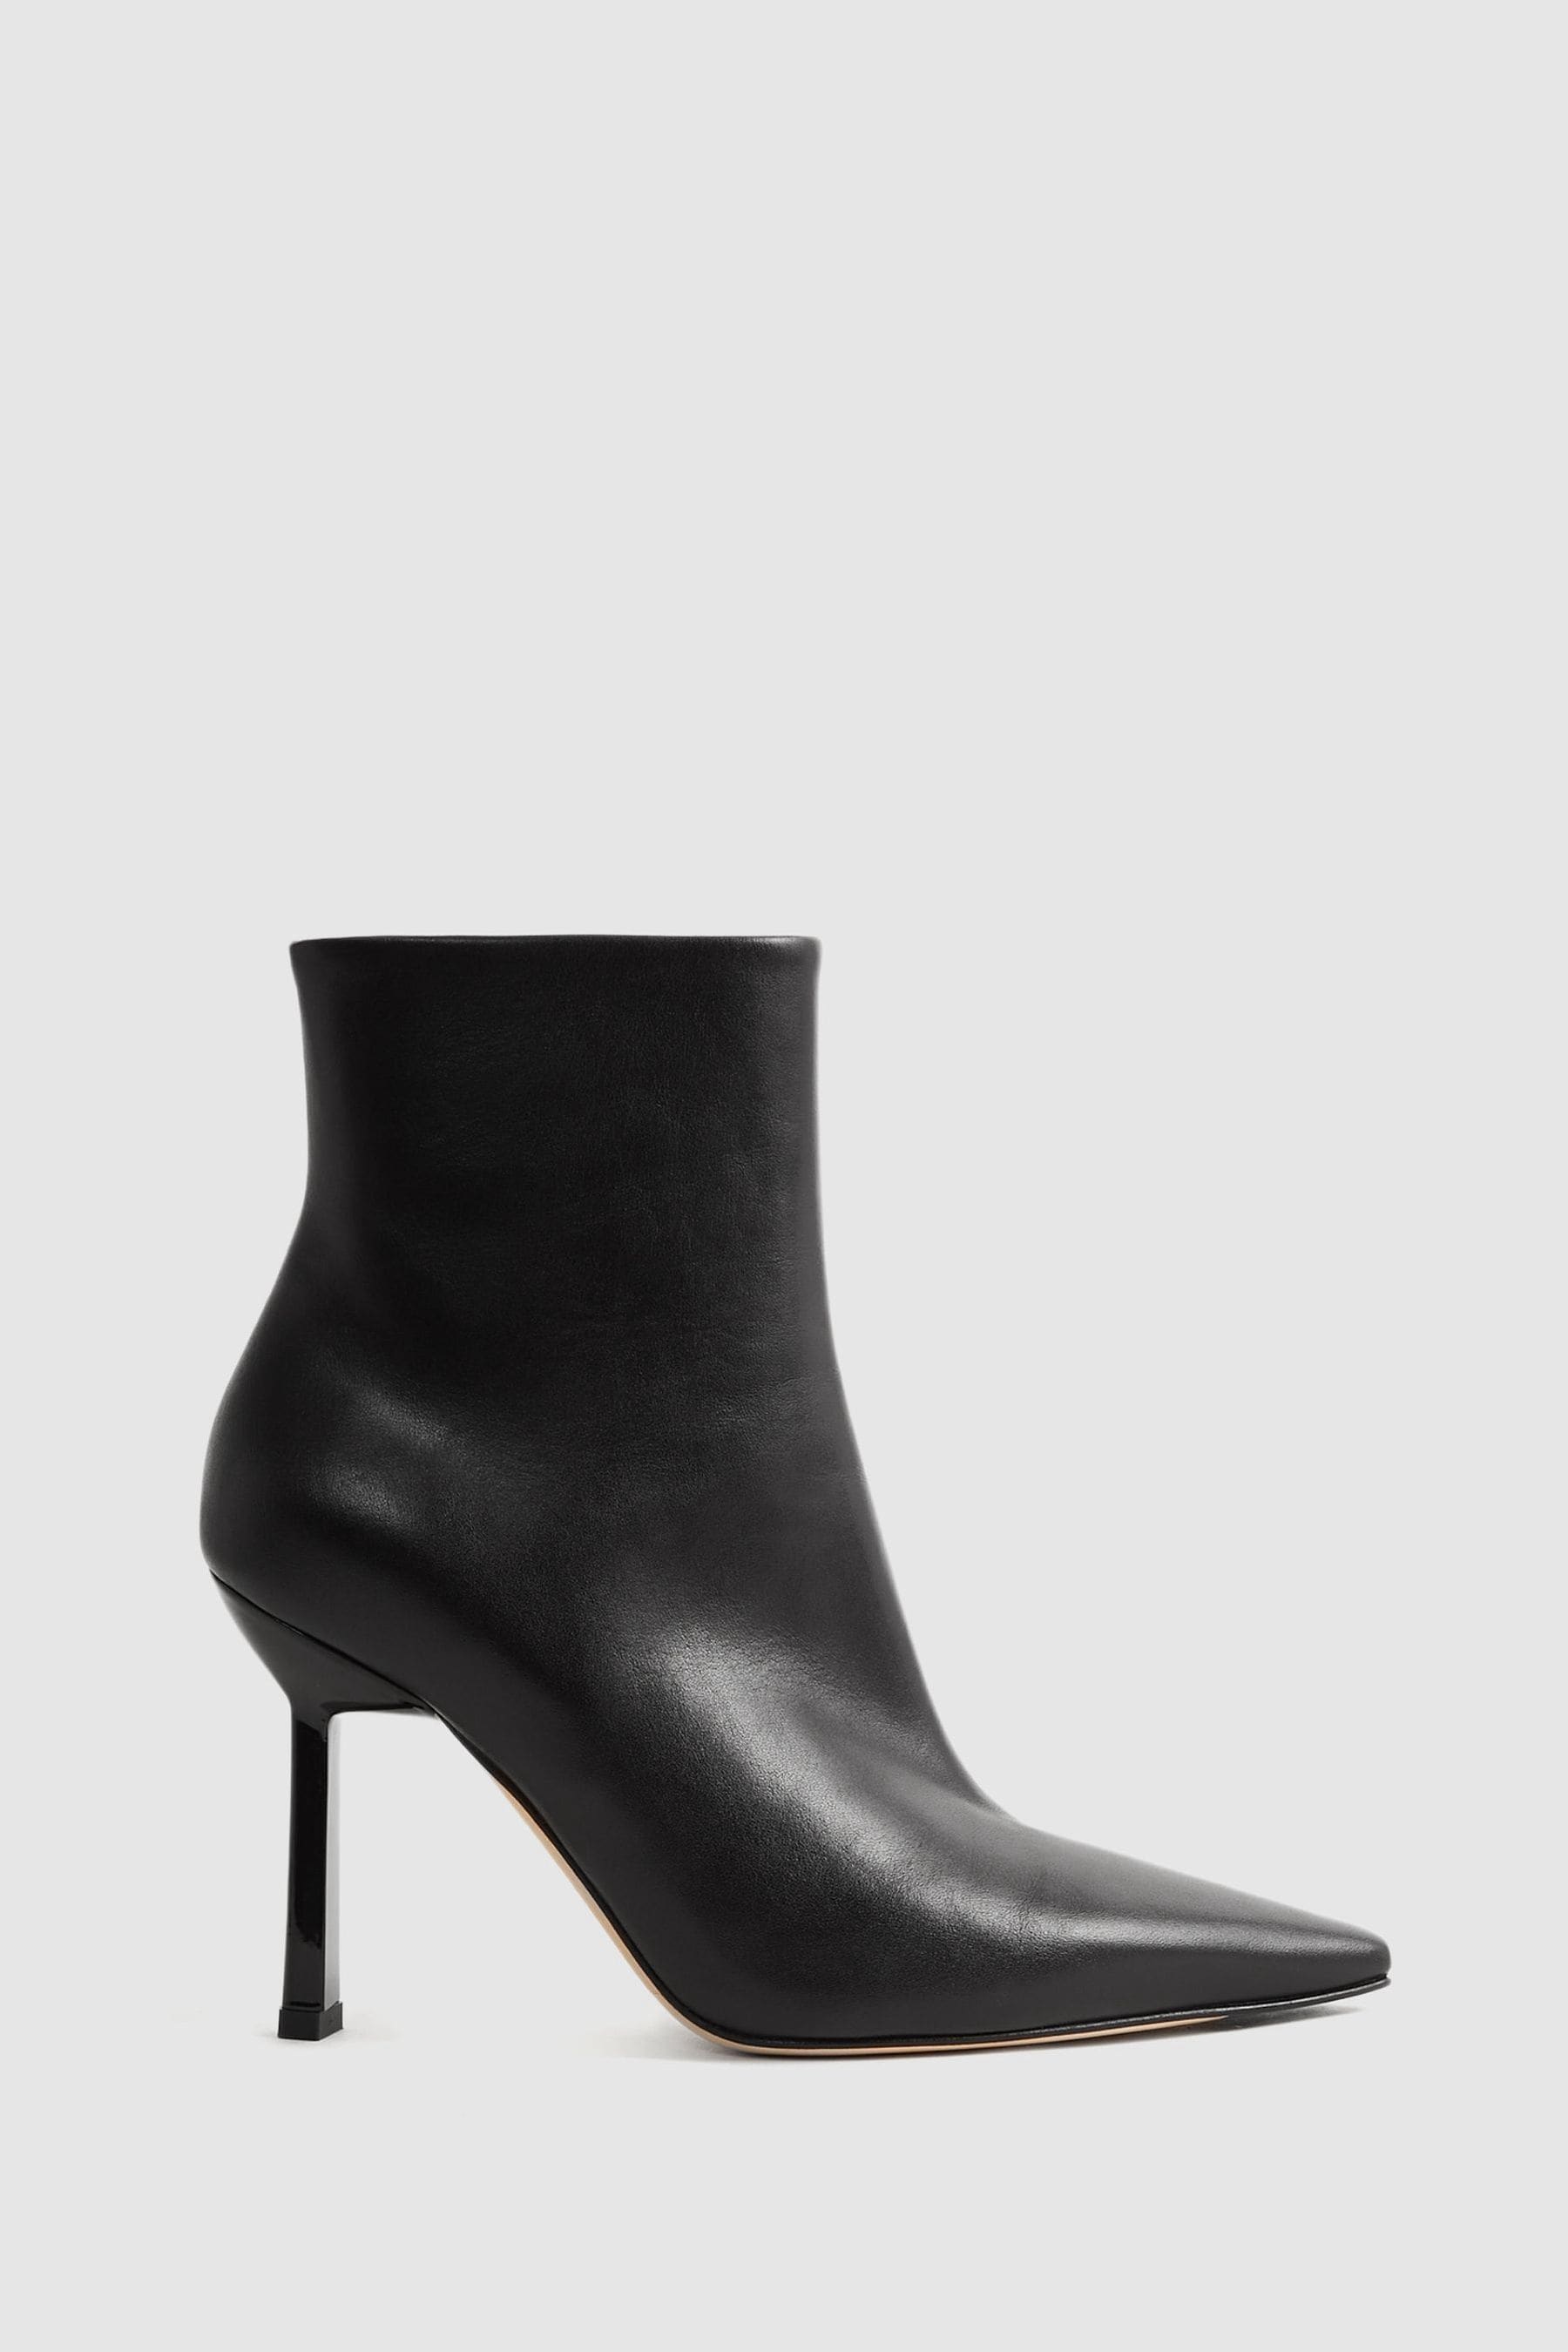 Reiss Scarlett - Black Atelier Italian Leather Heeled Ankle Boots, Uk 5 Eu 38